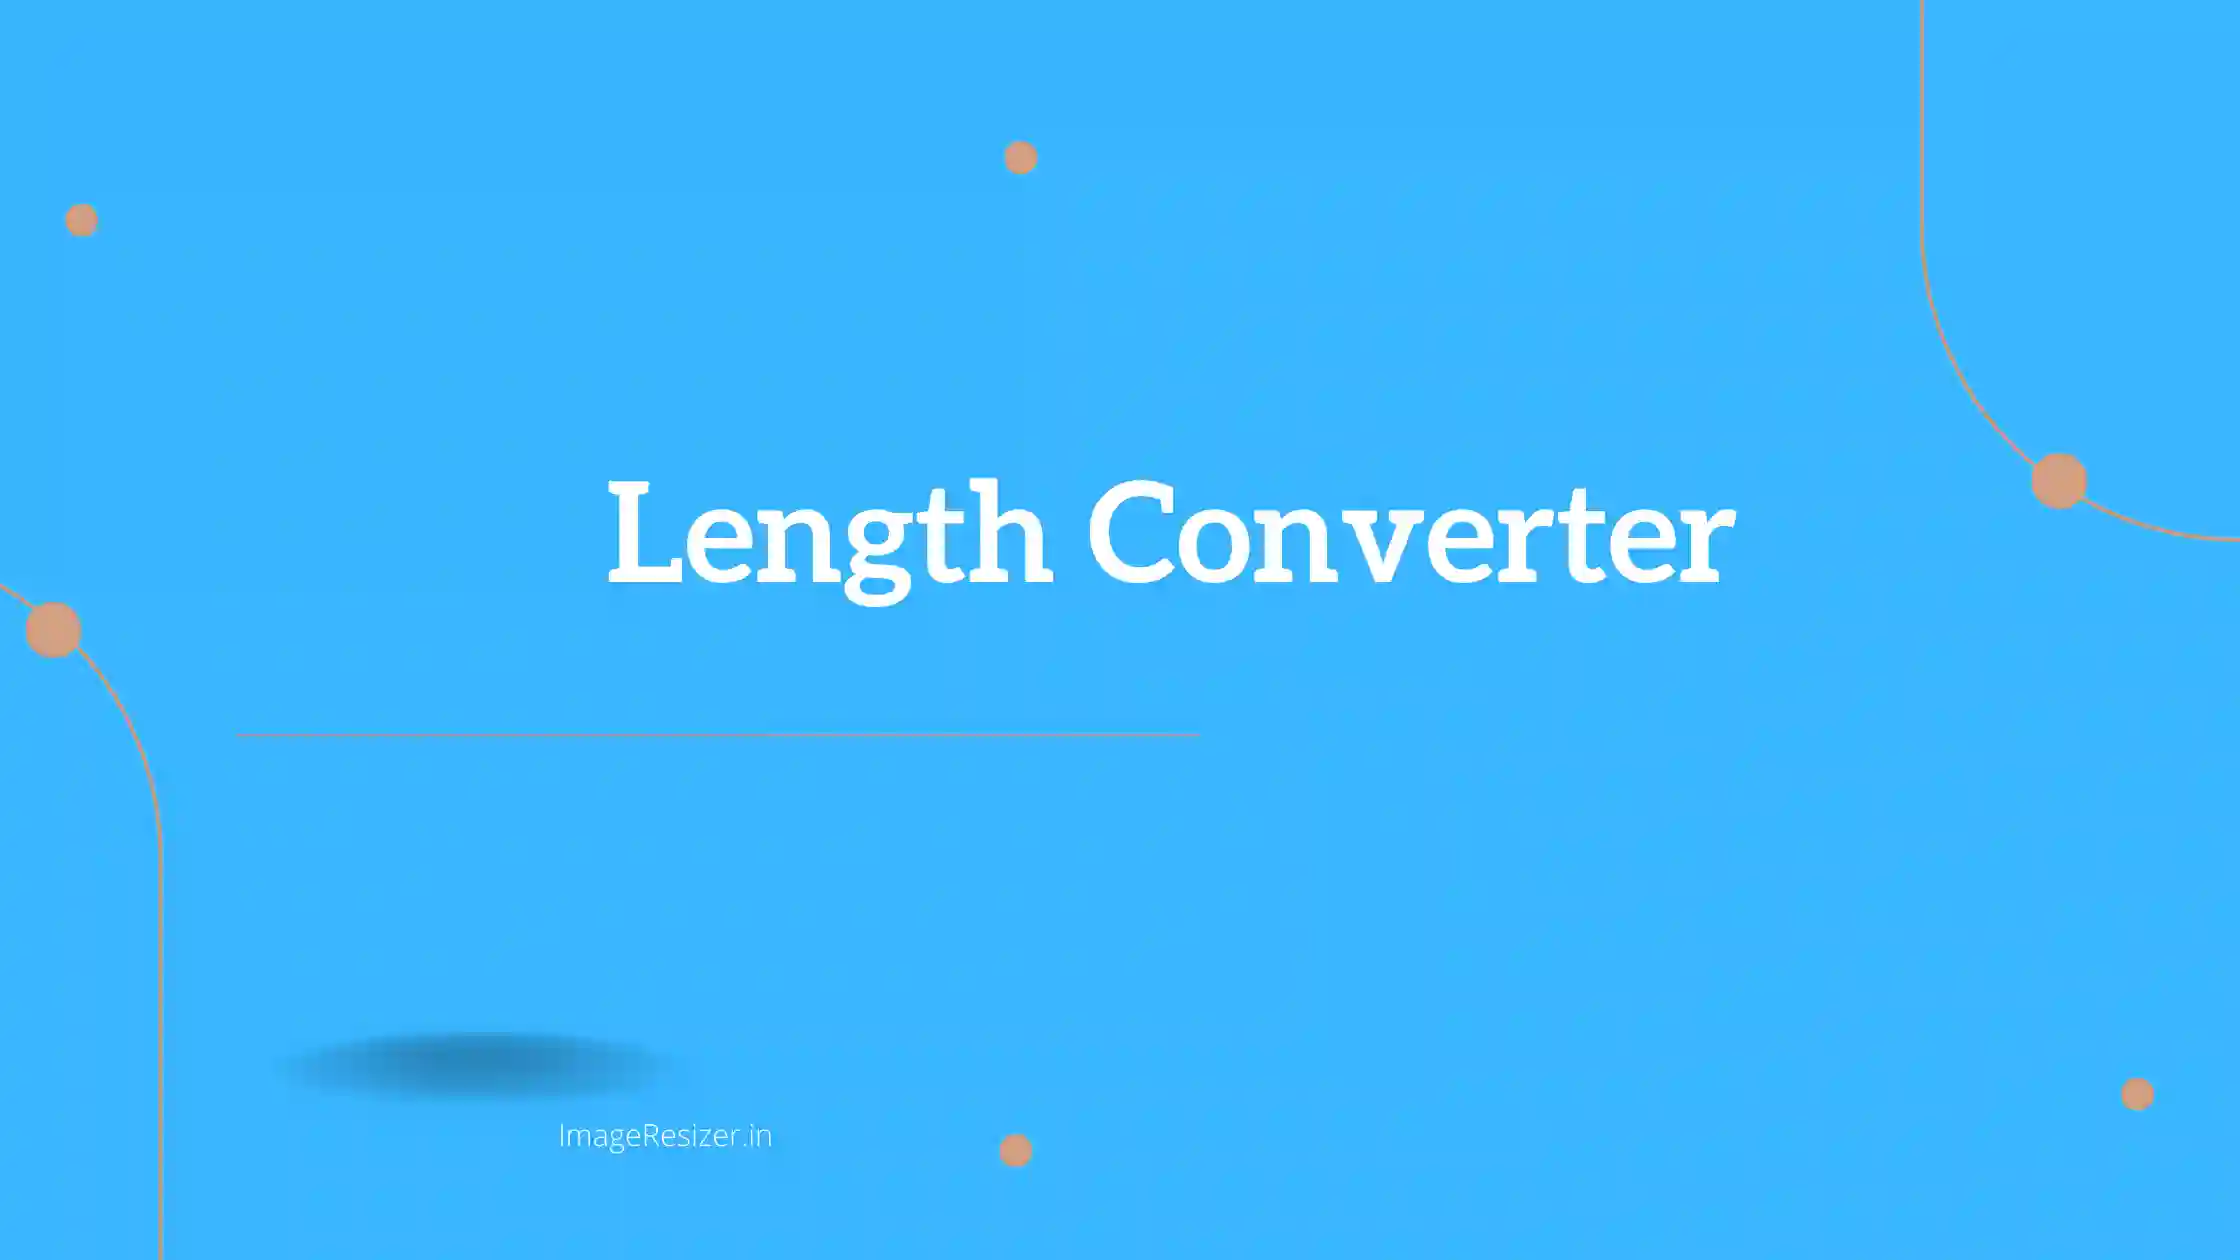 https://imageresizer.in/en/length-converter